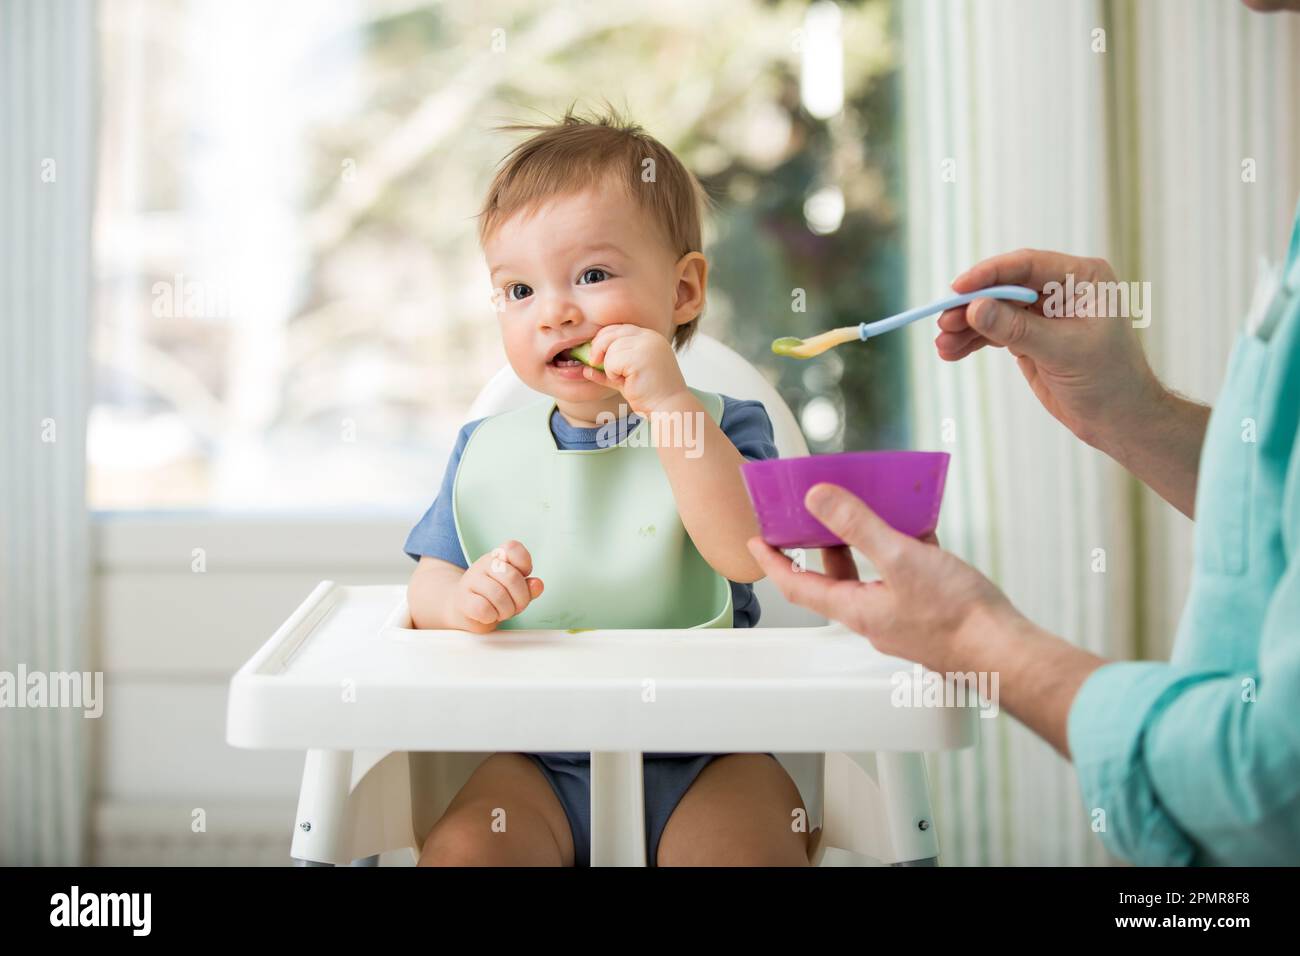 Père nourrissant son bébé mignon avec la première nourriture solide, bébé assis dans une chaise haute. Enfant goûtant des légumes à table, découvrant de nouveaux aliments. Banque D'Images